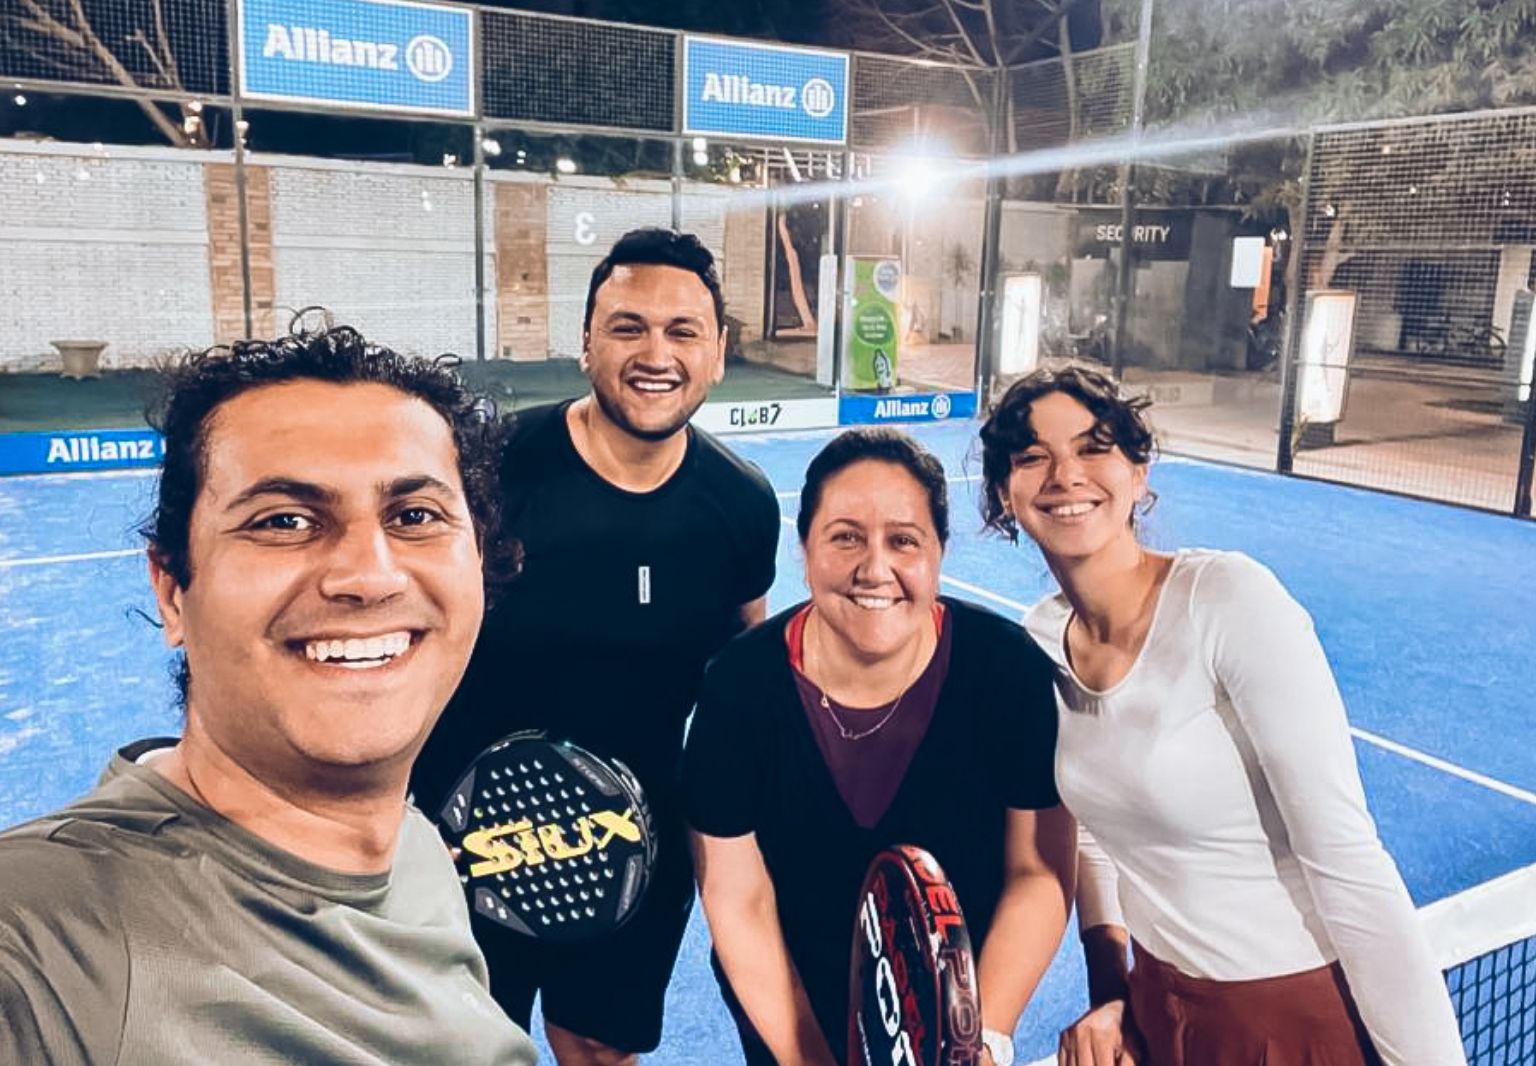 Foto: Vier Personen stehen teilweise mit Schlägern auf einem Tennisplatz und lächeln.